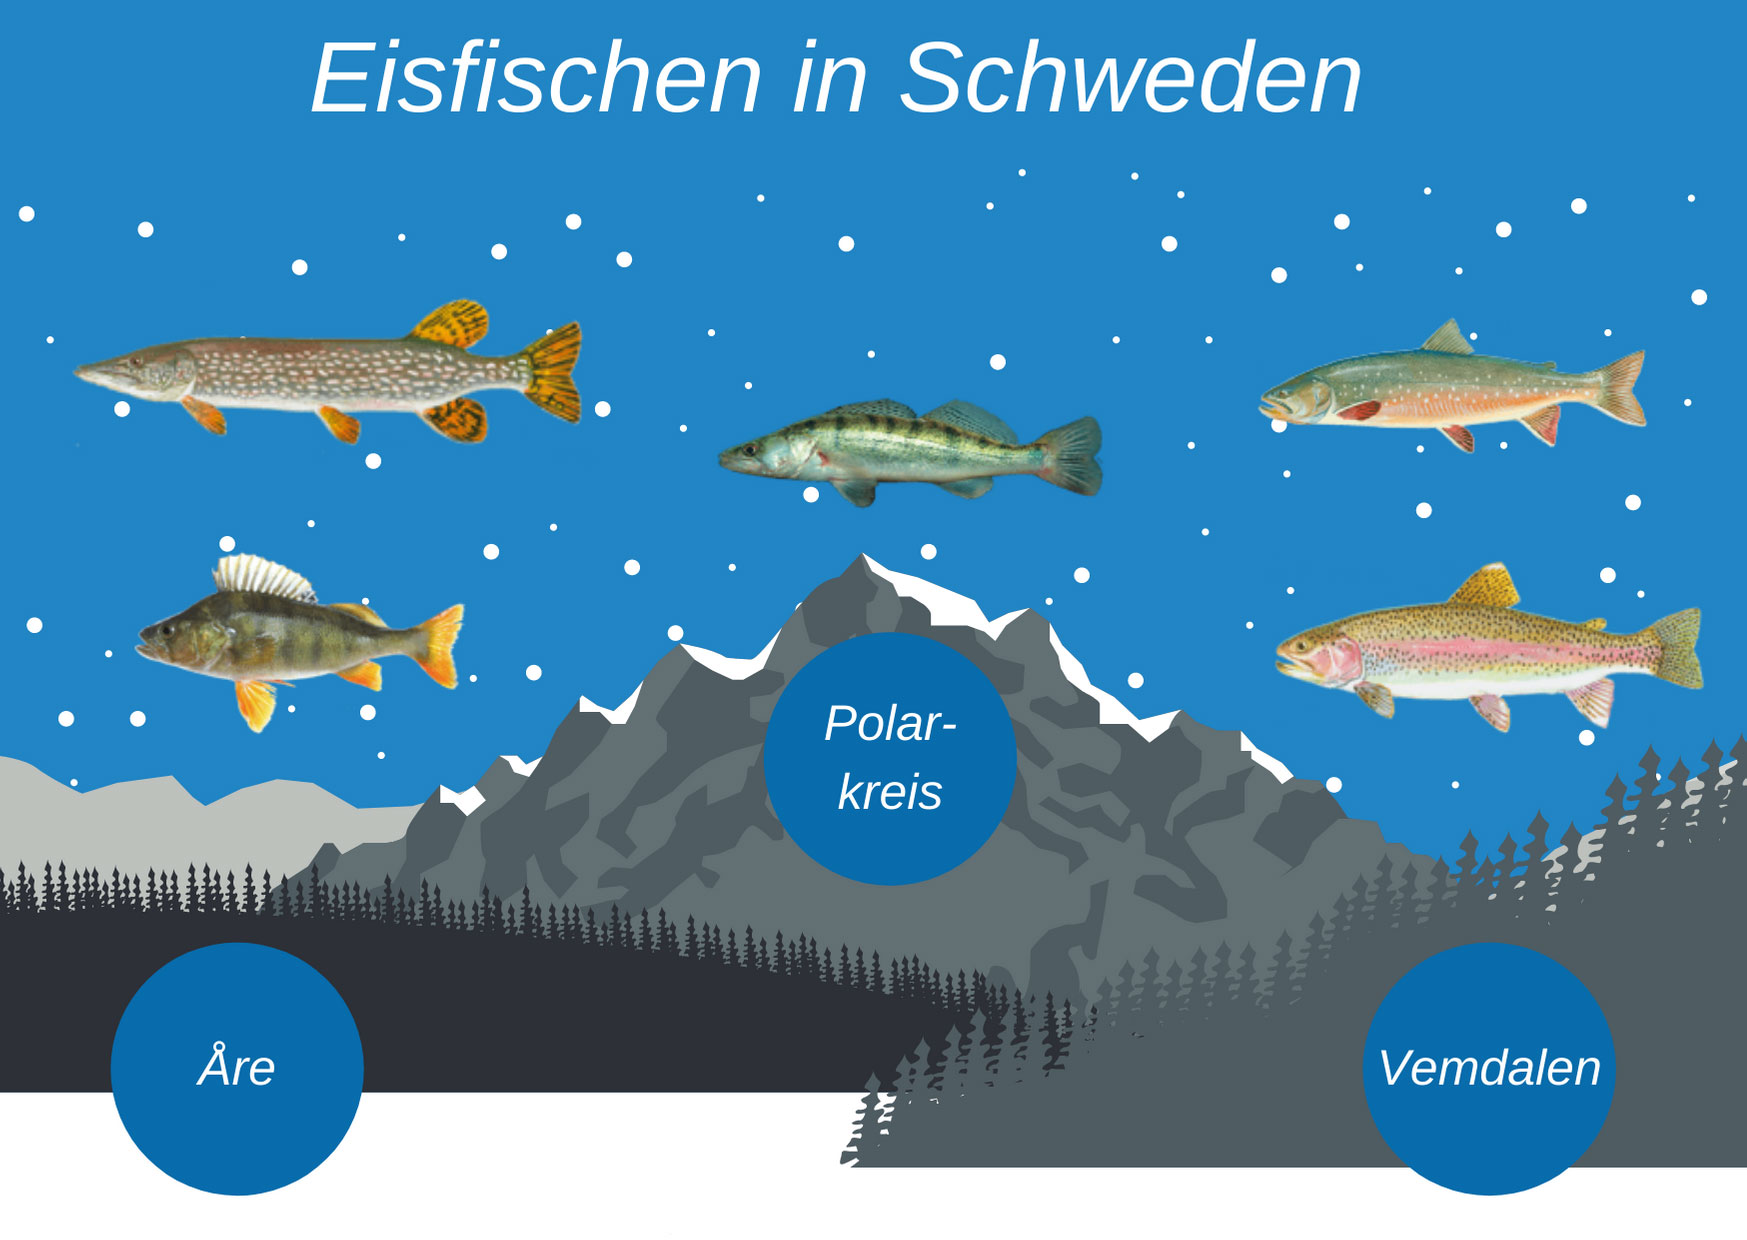 Eine Infografik mit den Top-Fischgründen Are, Polarkreis und Vemdalen sowie den Top-Arten Hecht, Zander, Lachs, Barsch und Saibling